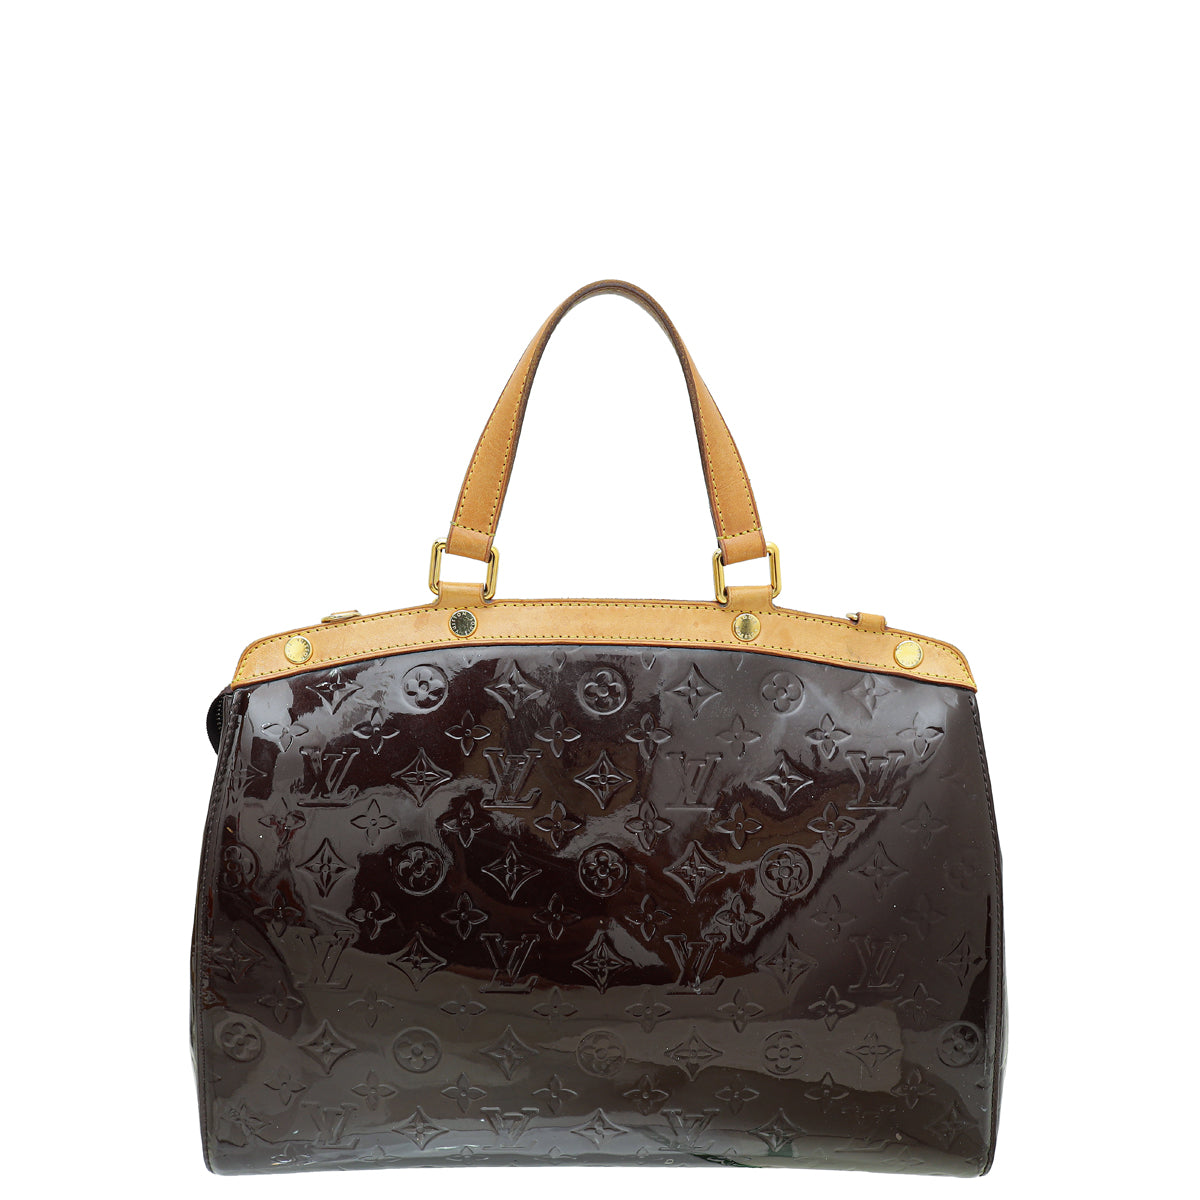 Louis Vuitton Monogram Cherie Pumps 38 Black 570695